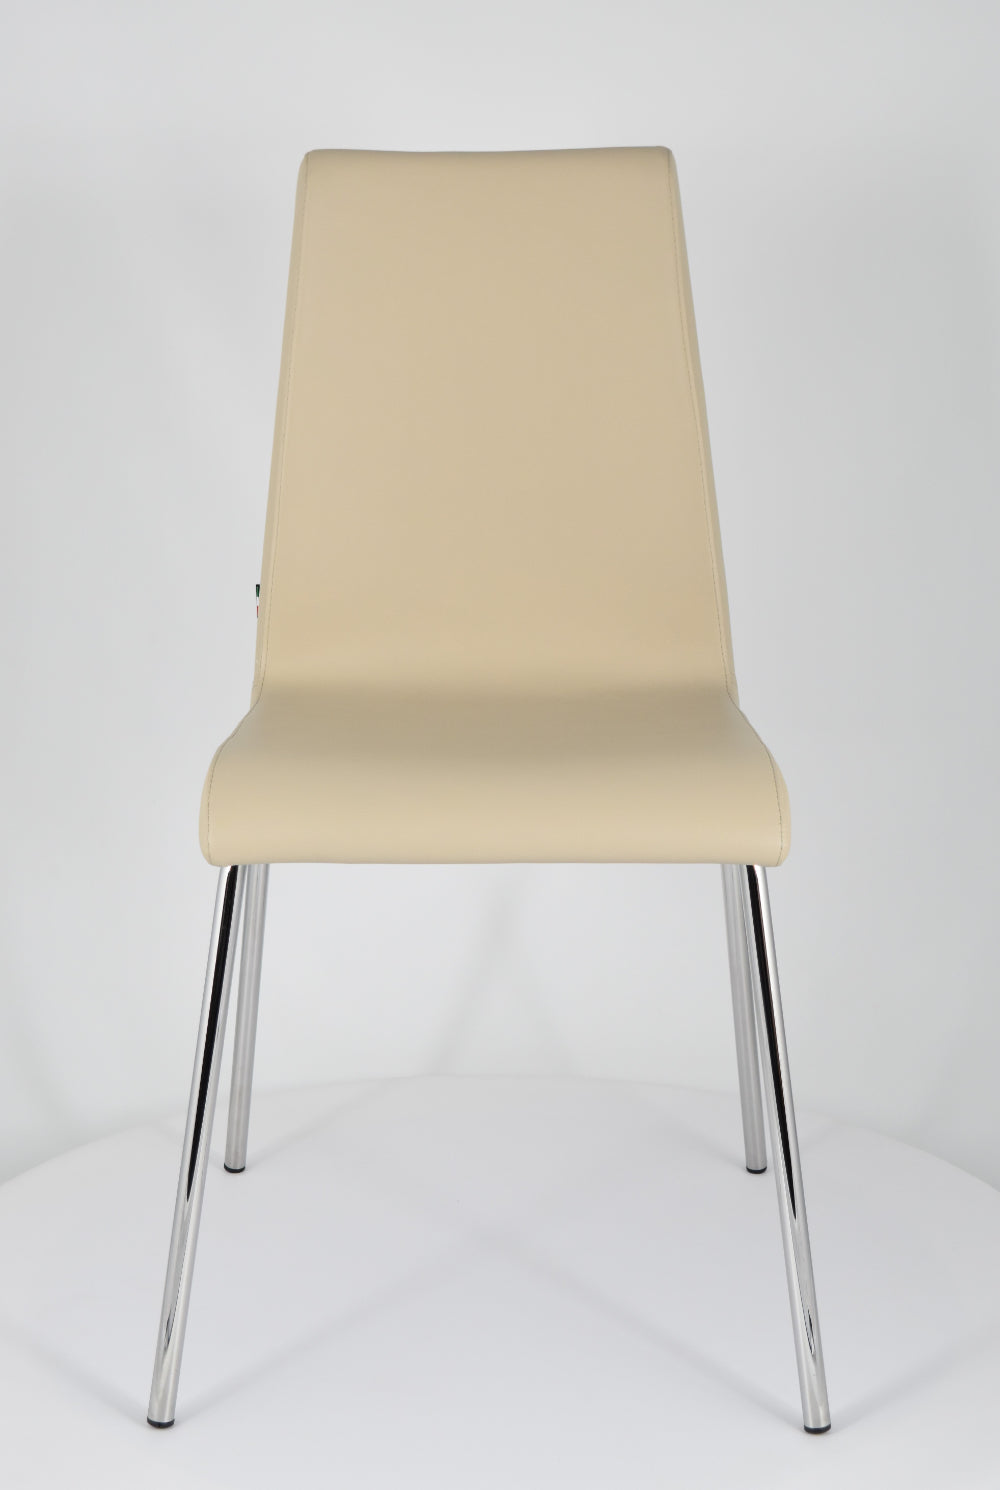 Tommychairs - Set 4 sillas Madrid con Patas de Acero Cromado y Asiento en Madera Multicapa, tapizado en Polipiel Color Lino